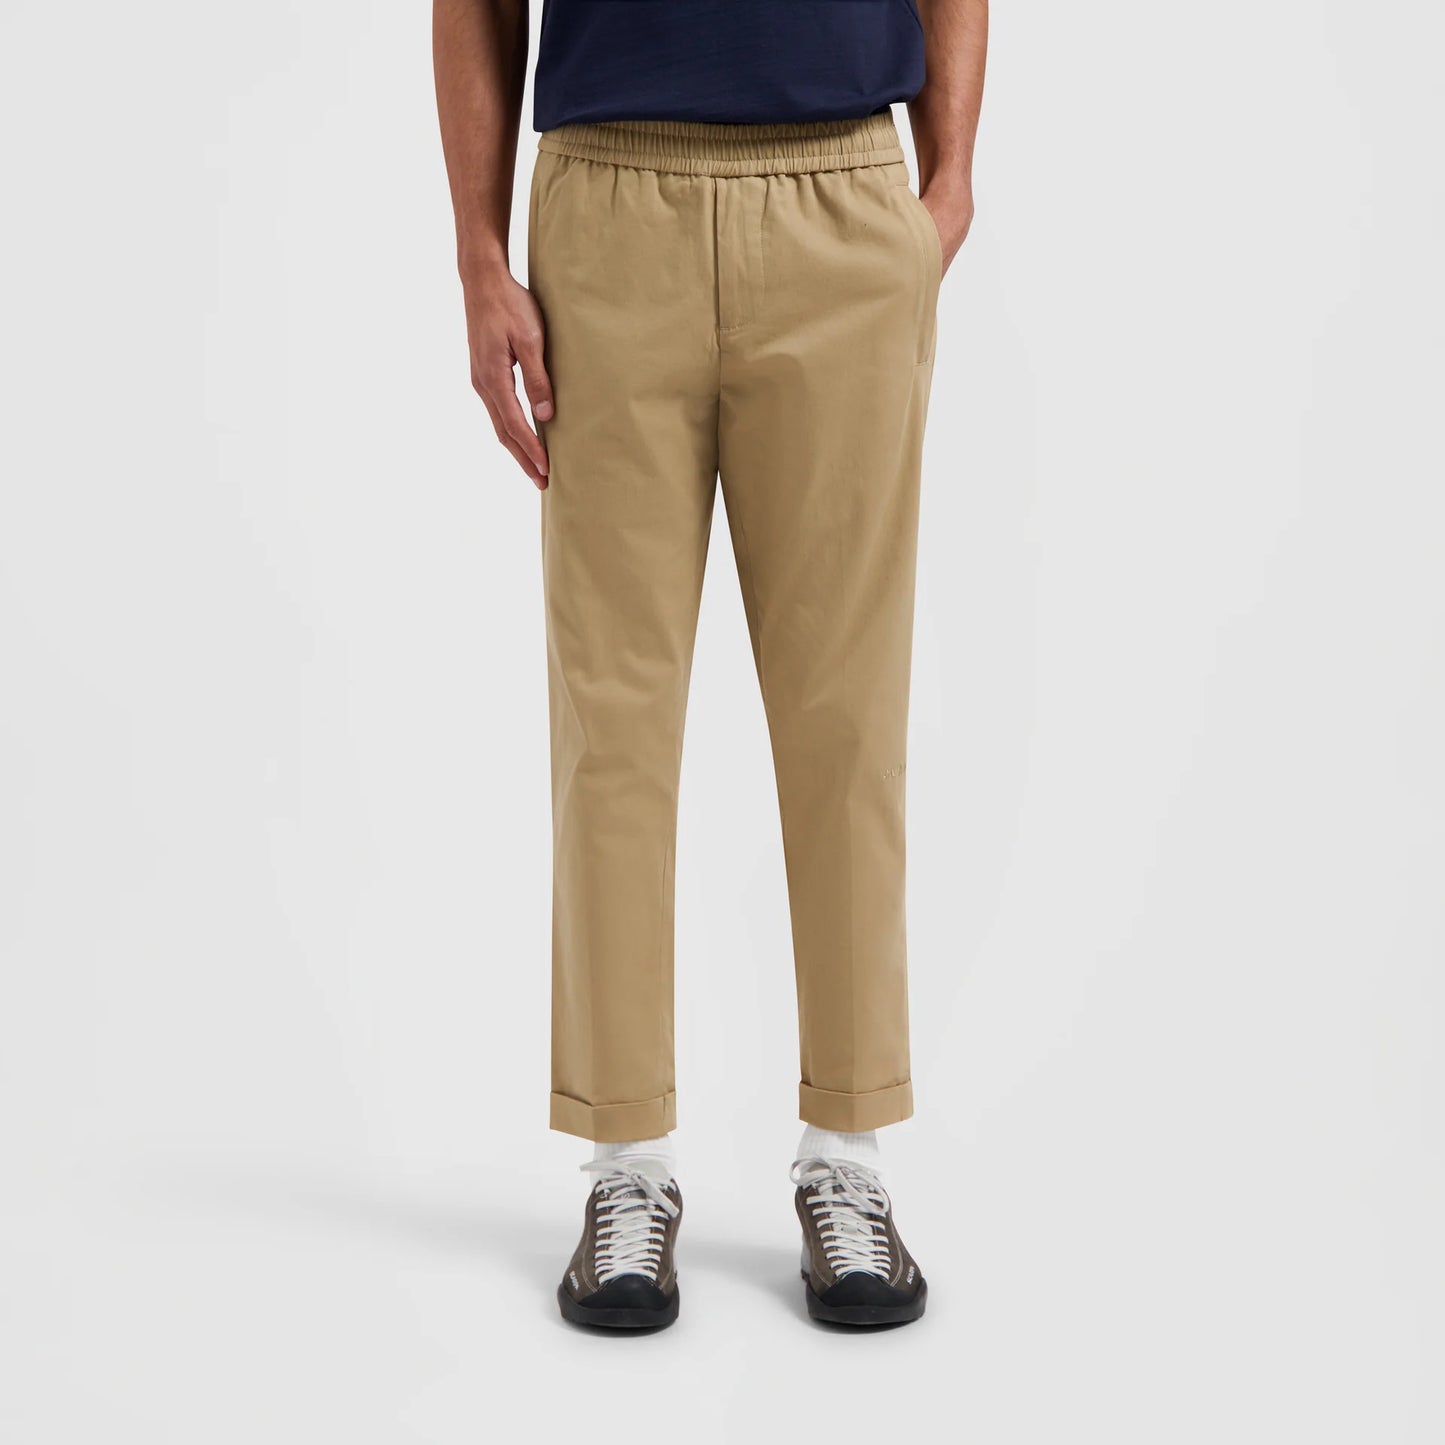 Pantalon Slim Trousers - Coton